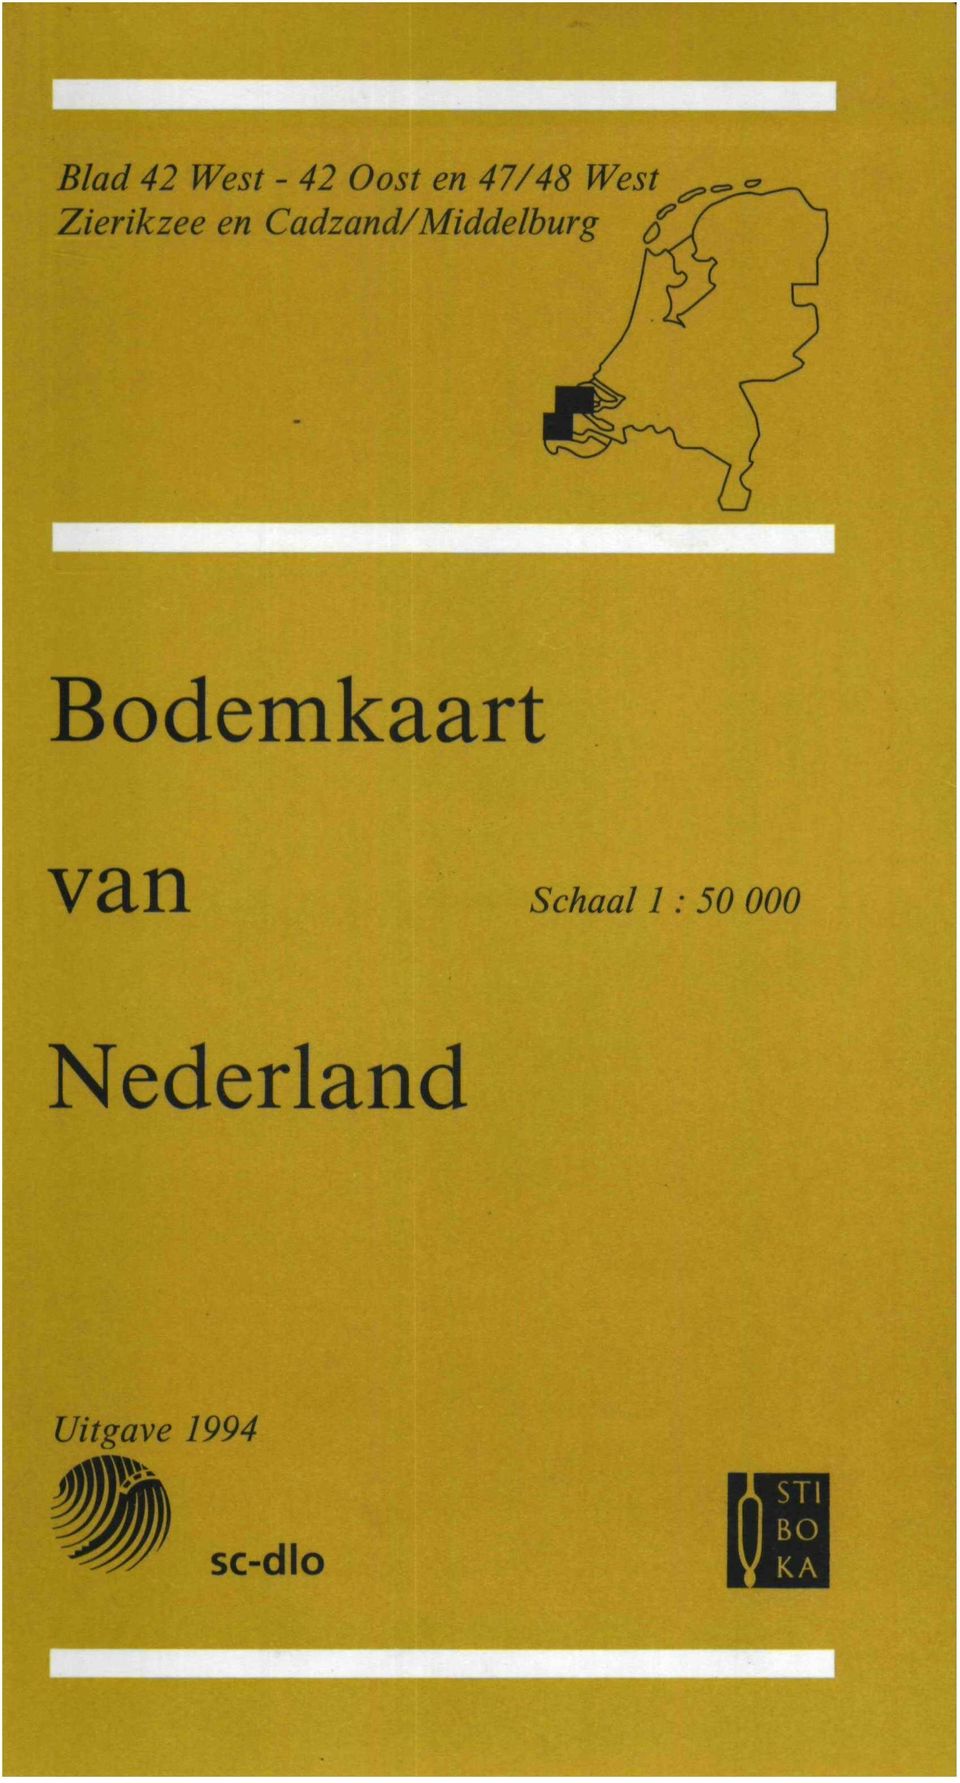 Cadzand/Middelburg $